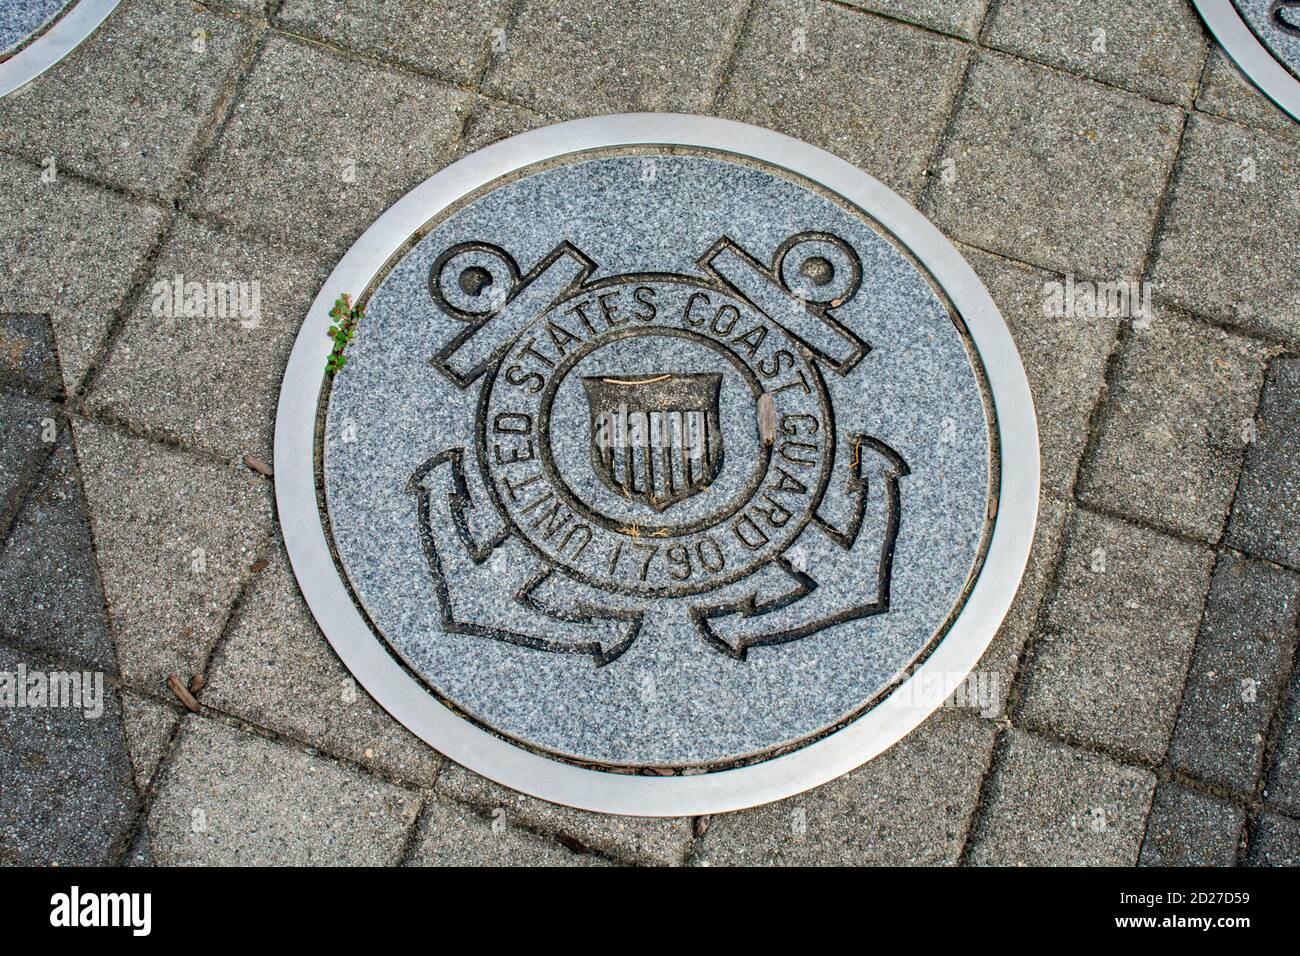 WILDWOOD, NEW JERSEY - 16 settembre 2020: Un simbolo circolare che rappresenta la Guardia Costiera americana a terra. Foto Stock